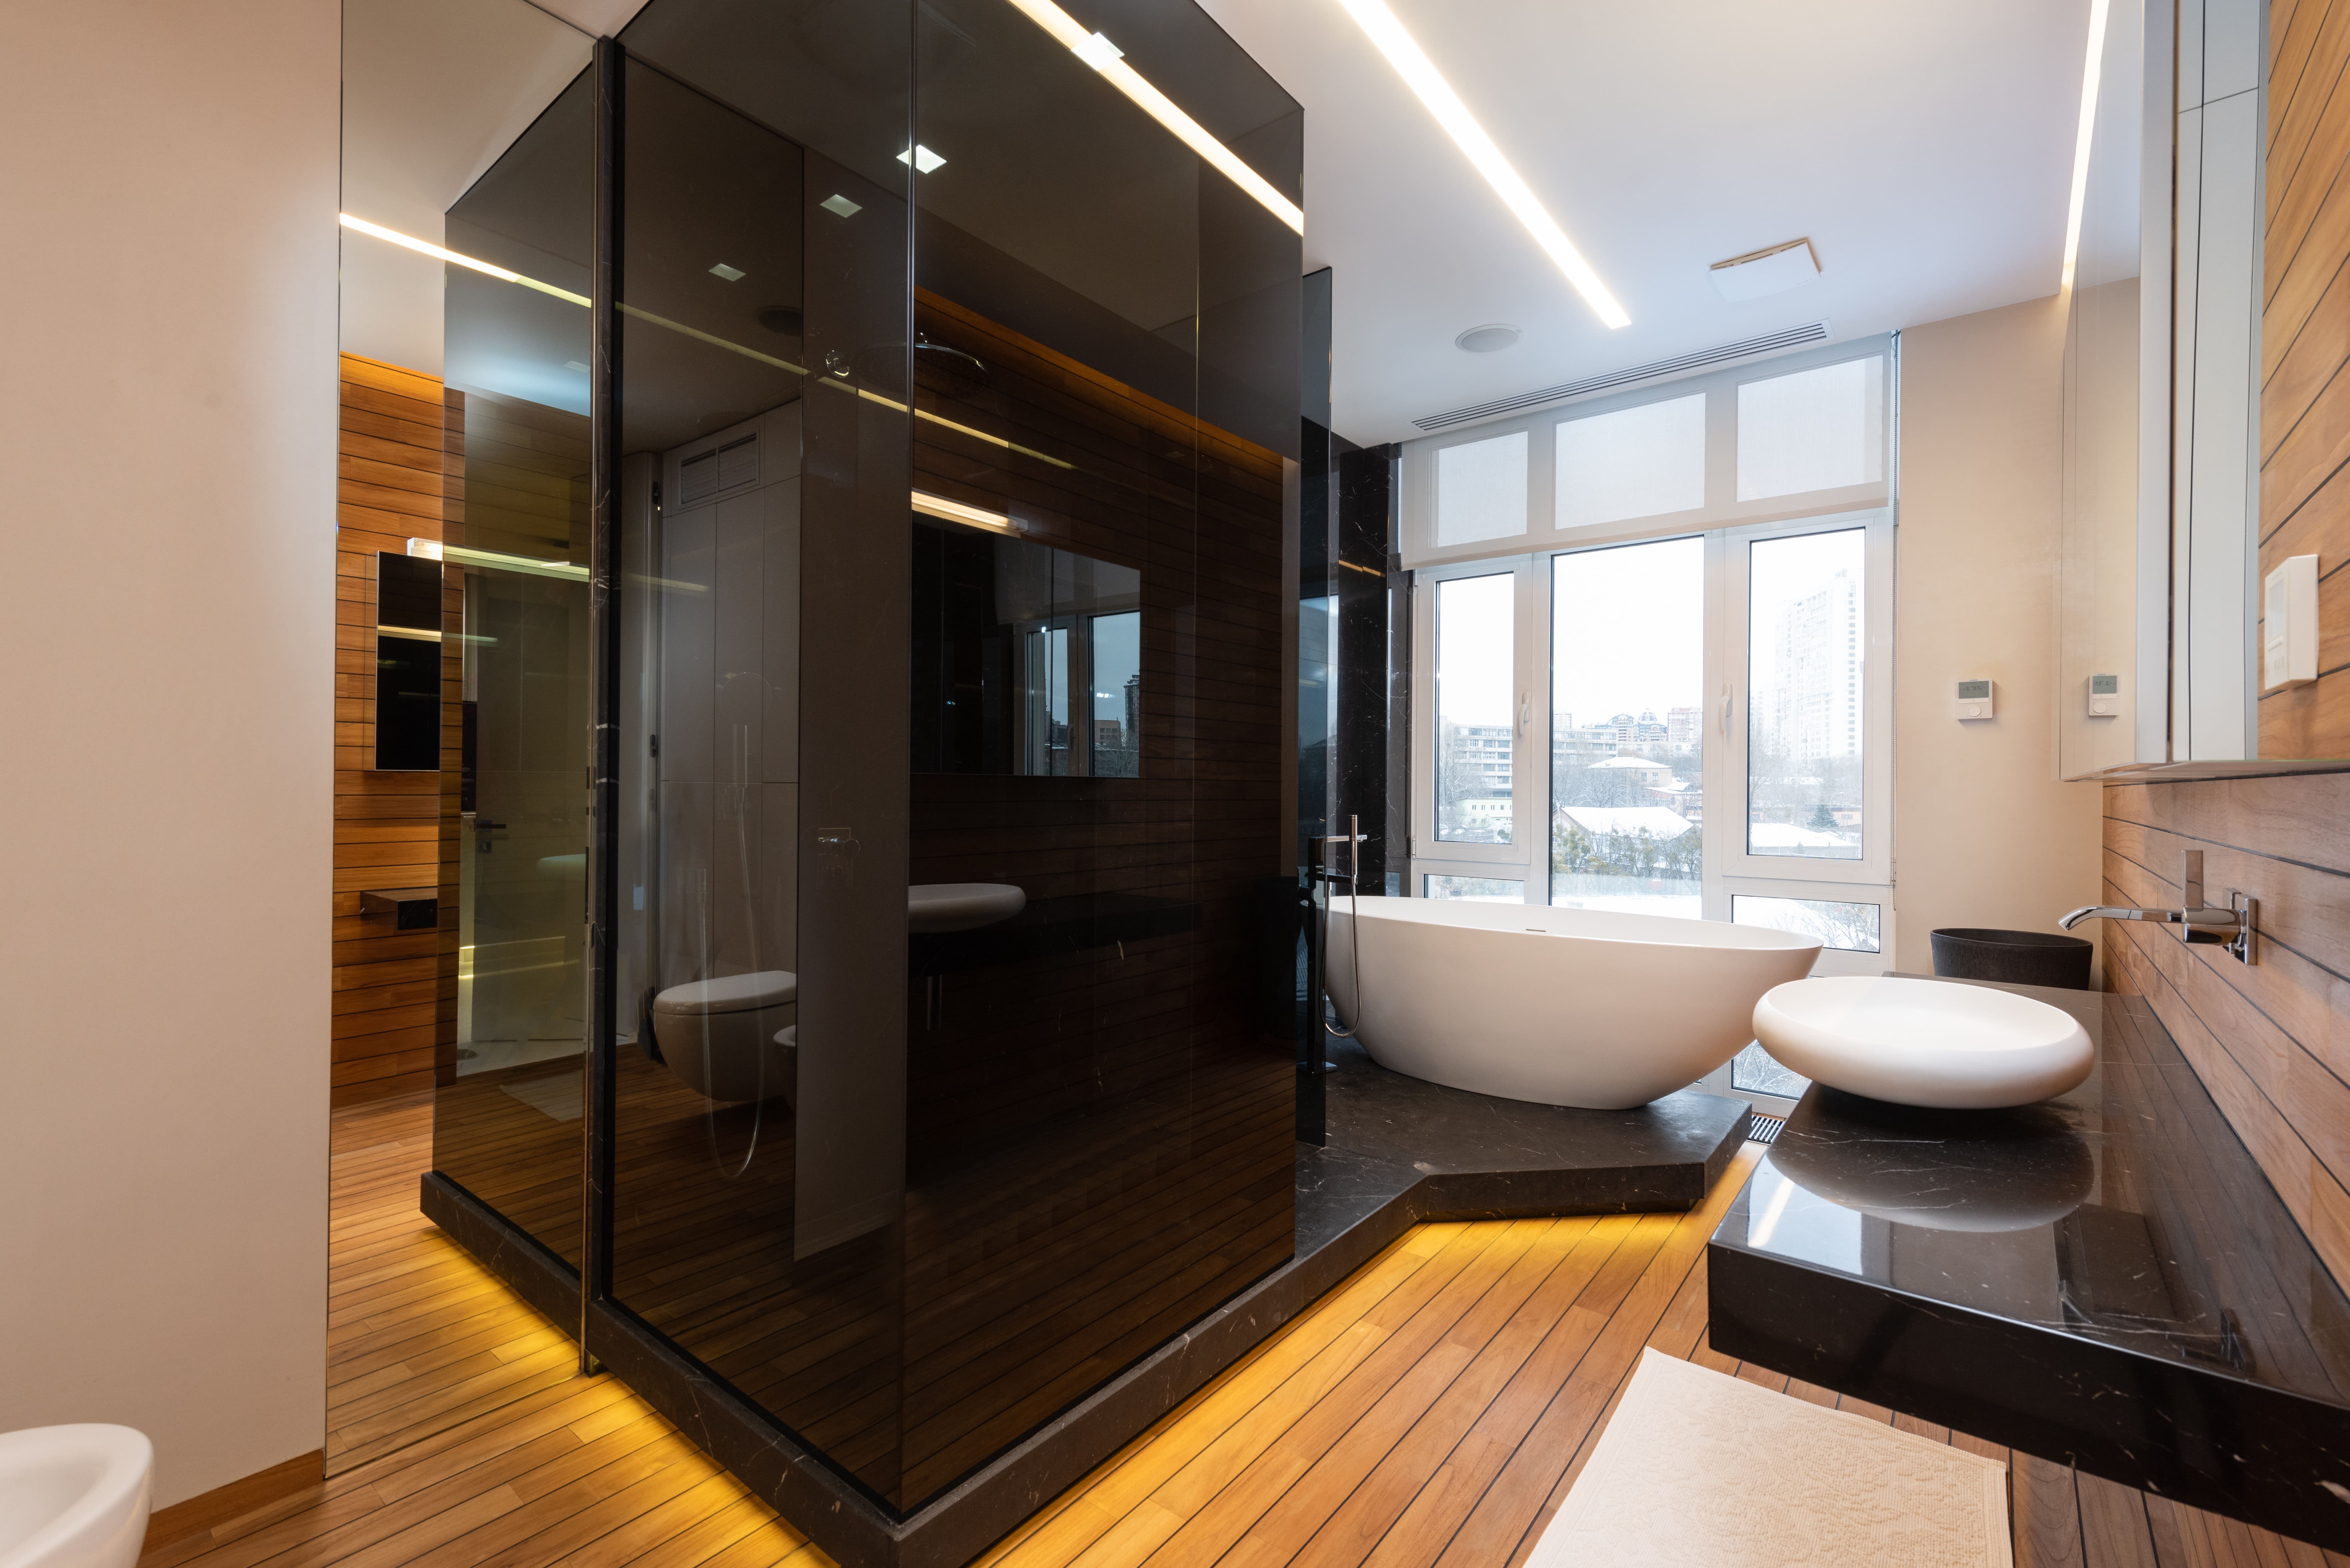 Планировка туалета и ванной комнаты в частном доме | Блог о дизайне .